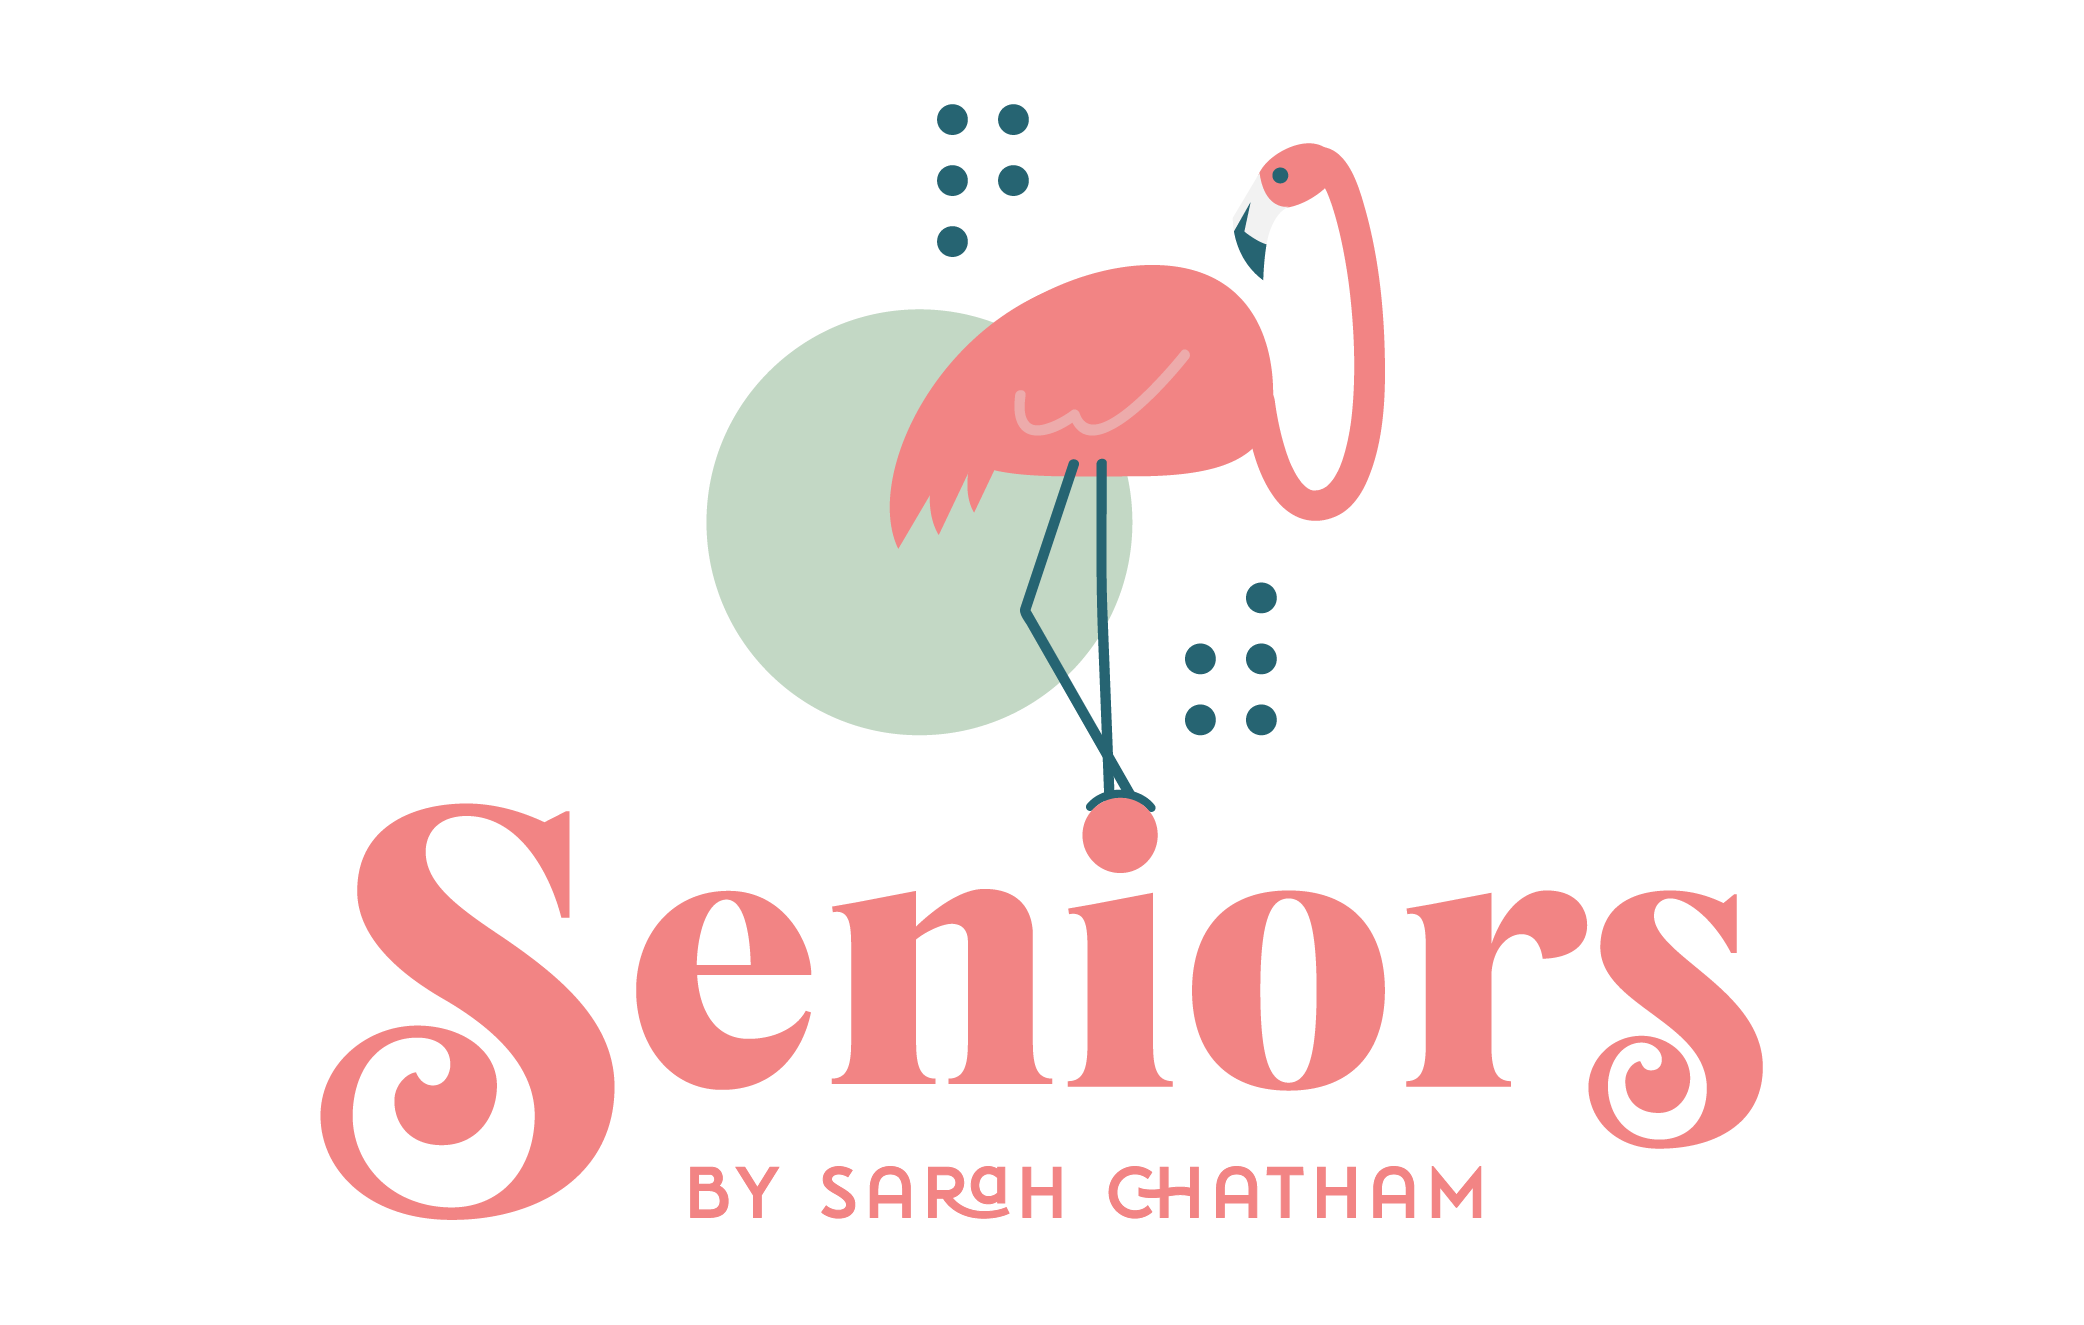 Sarah Chatham Seniors